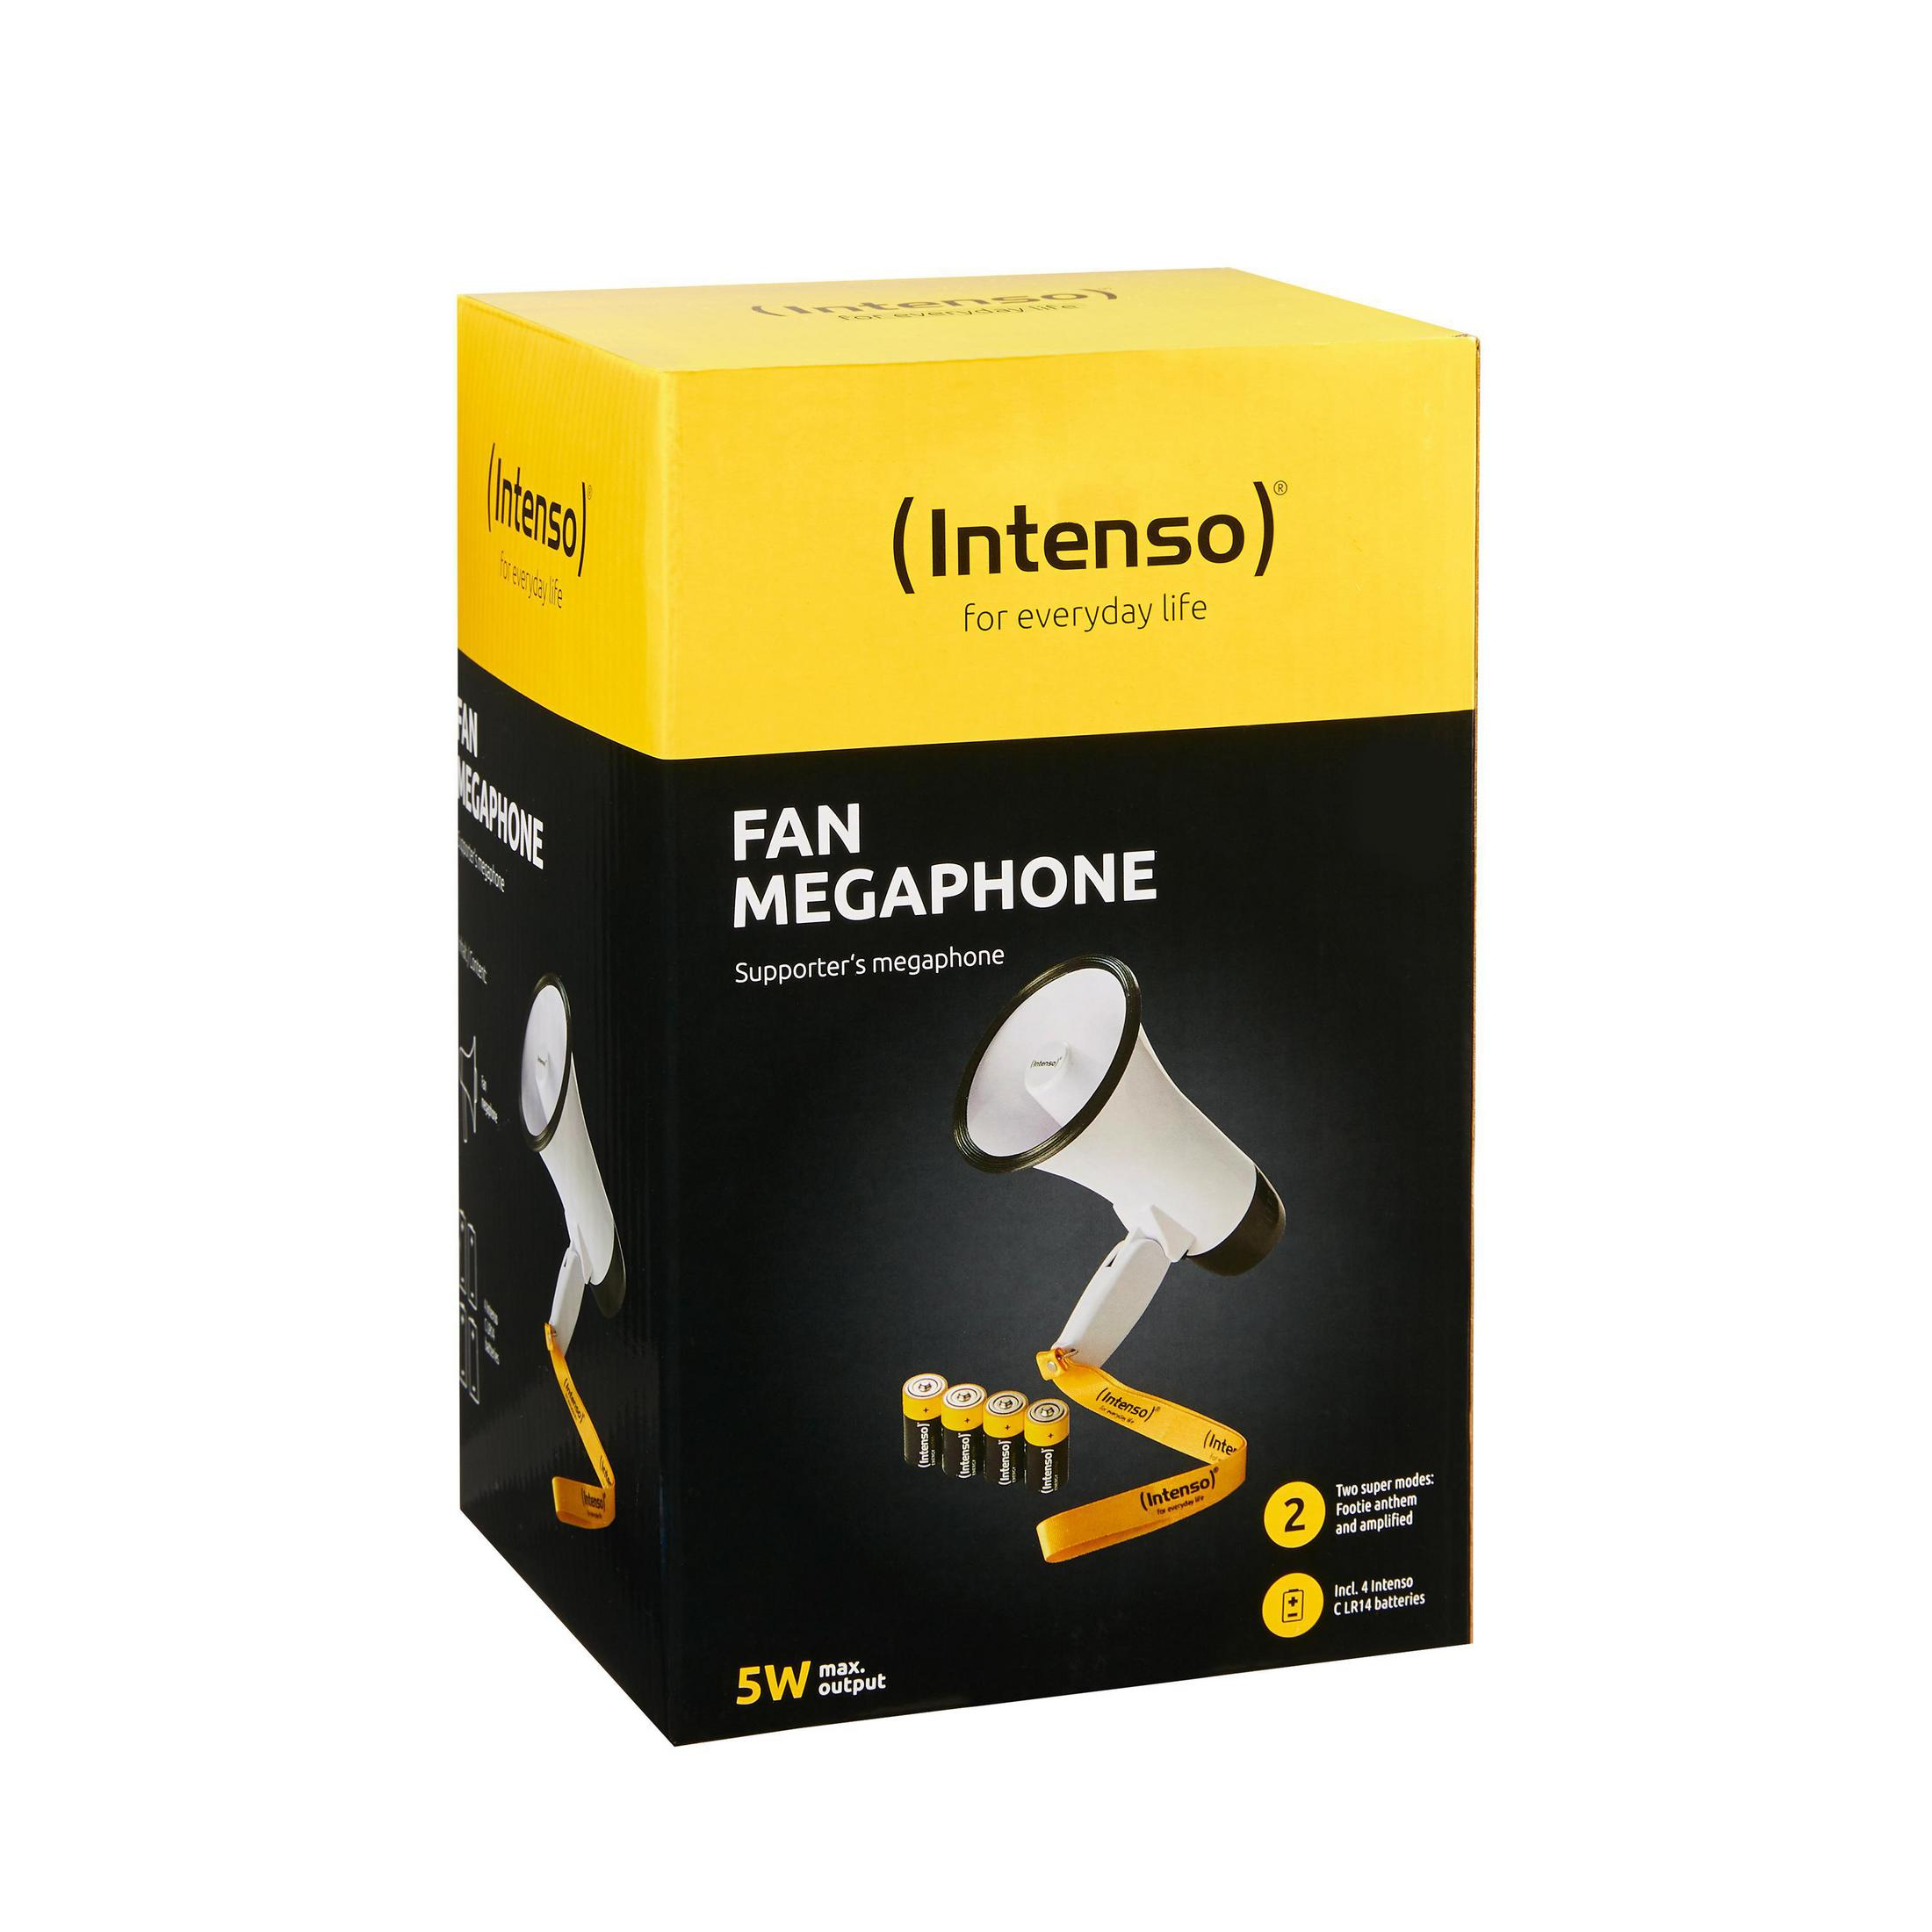 INTENSO 9504001 MOBILE SPEAKER, Megafon